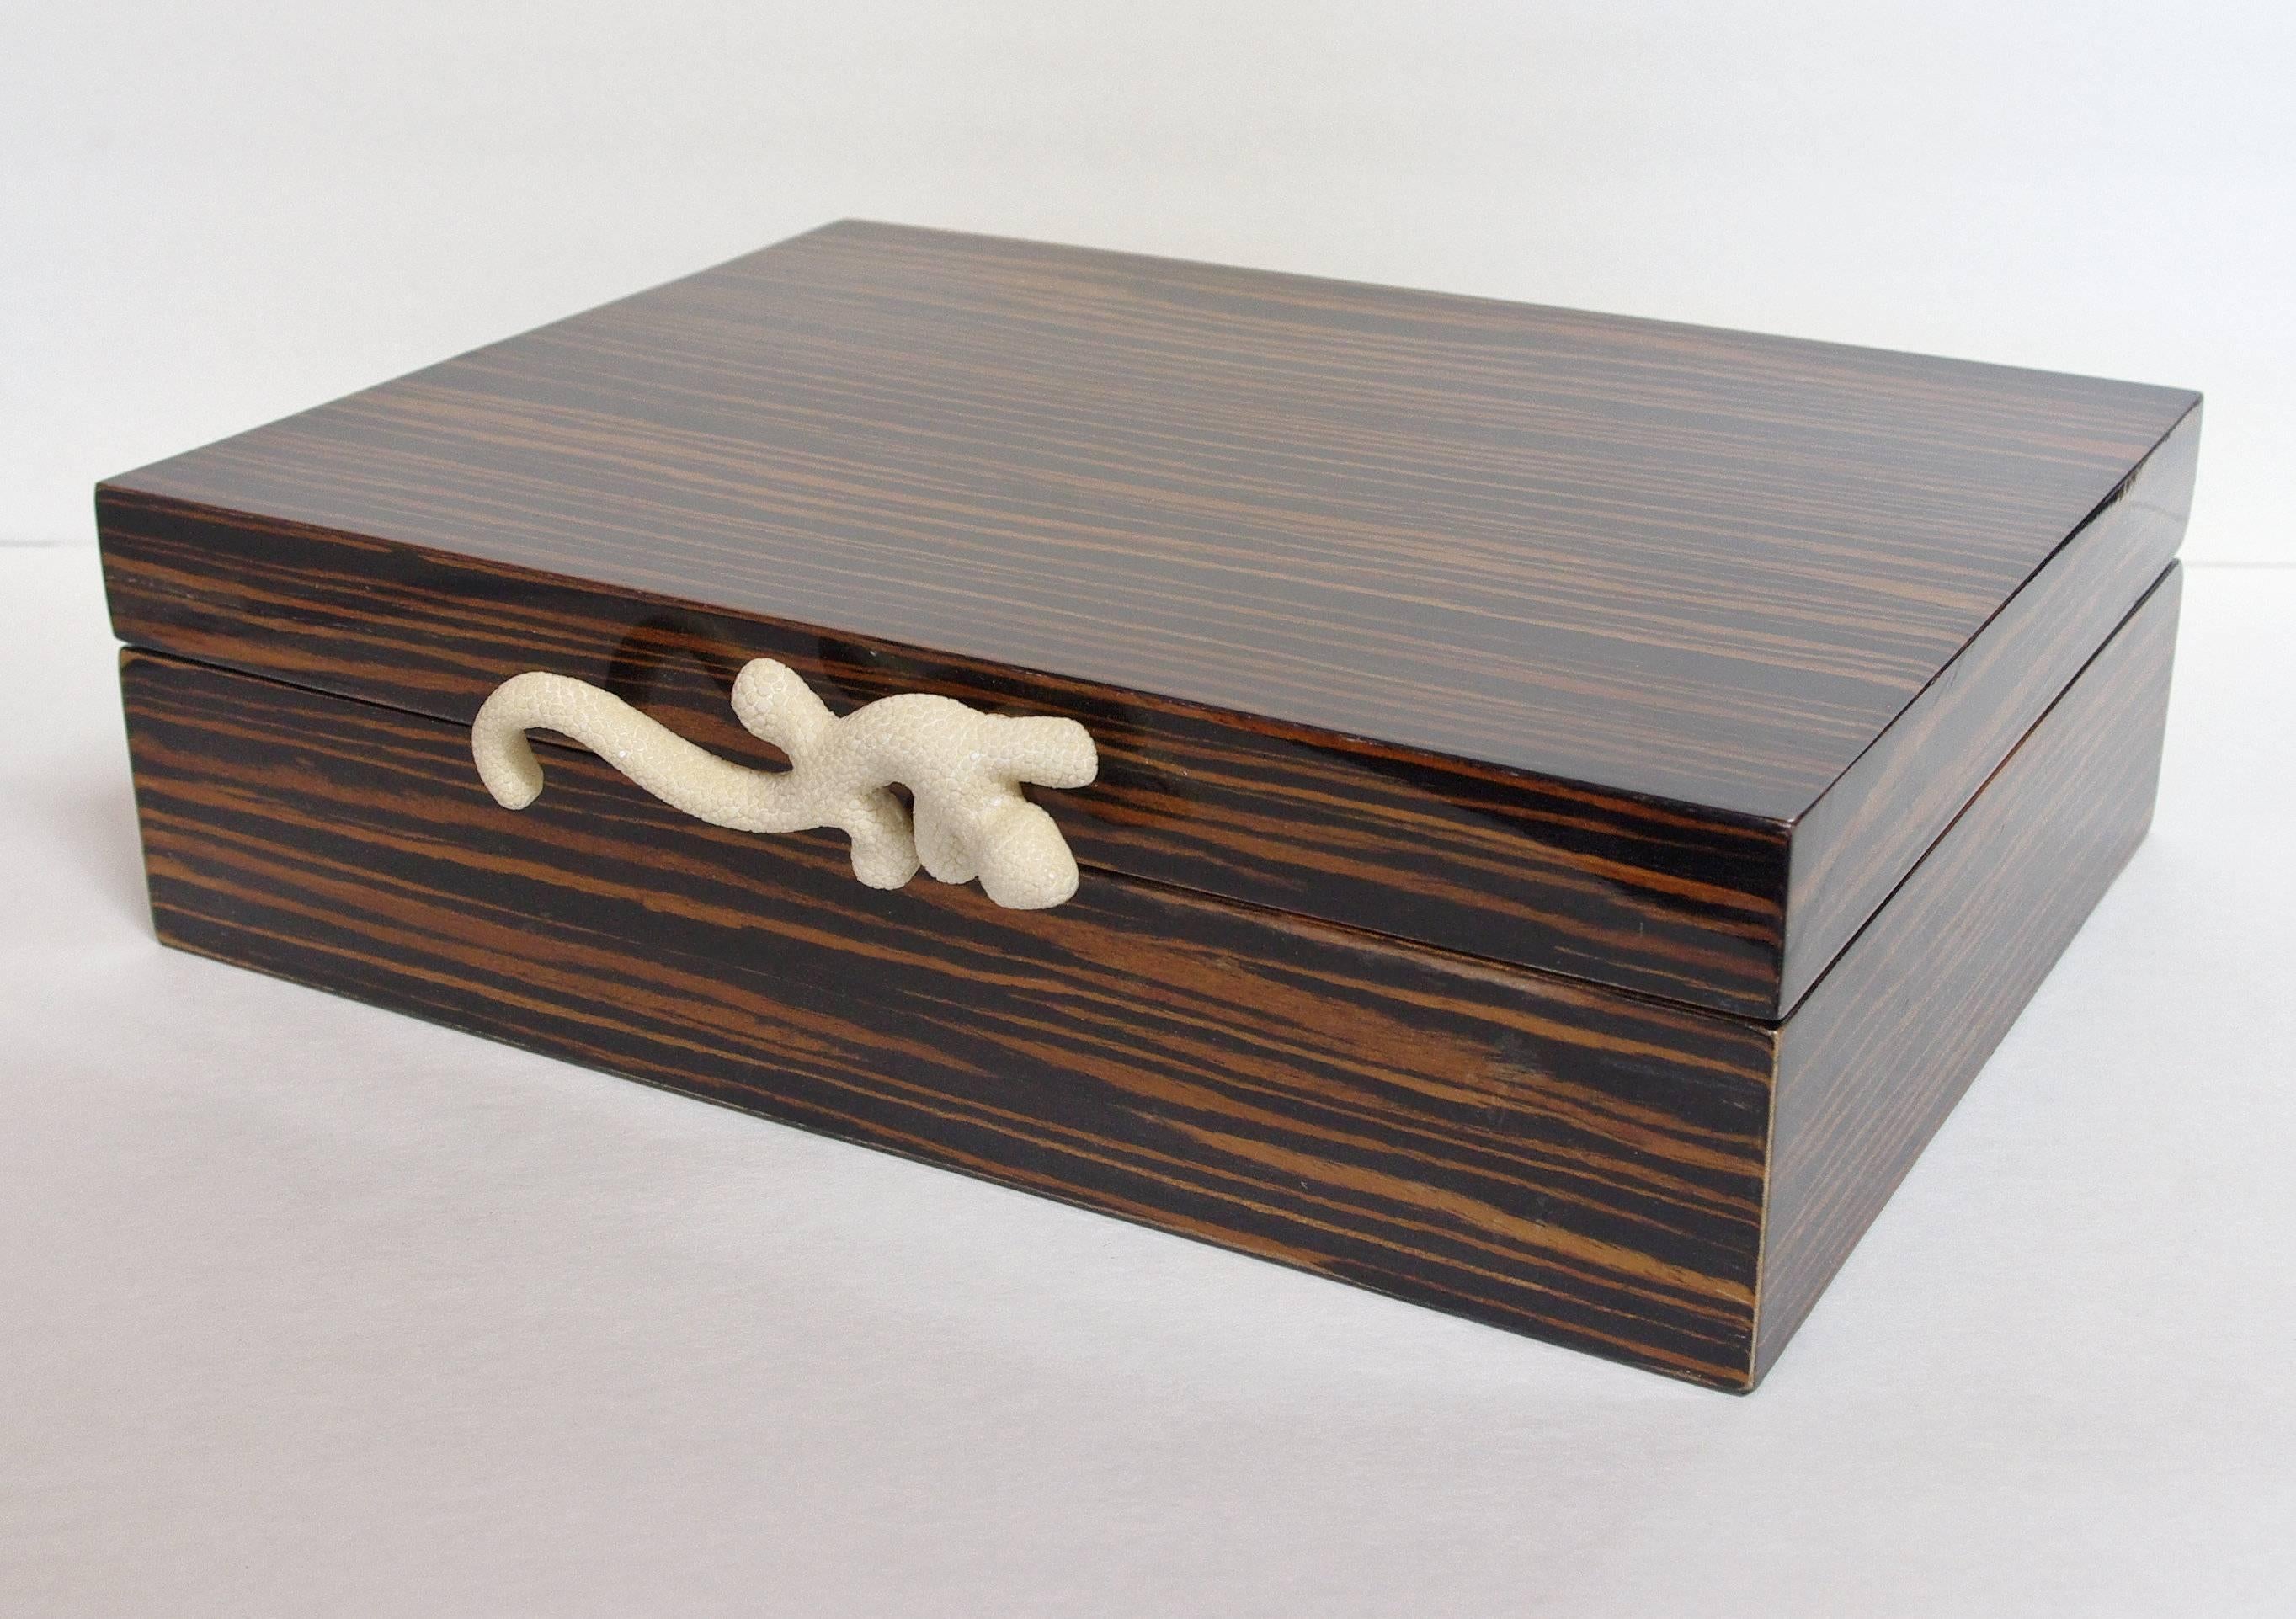 Amenity box in brown Macassar with gecko (ivory shagreen) knob by Fabio Bergomi.